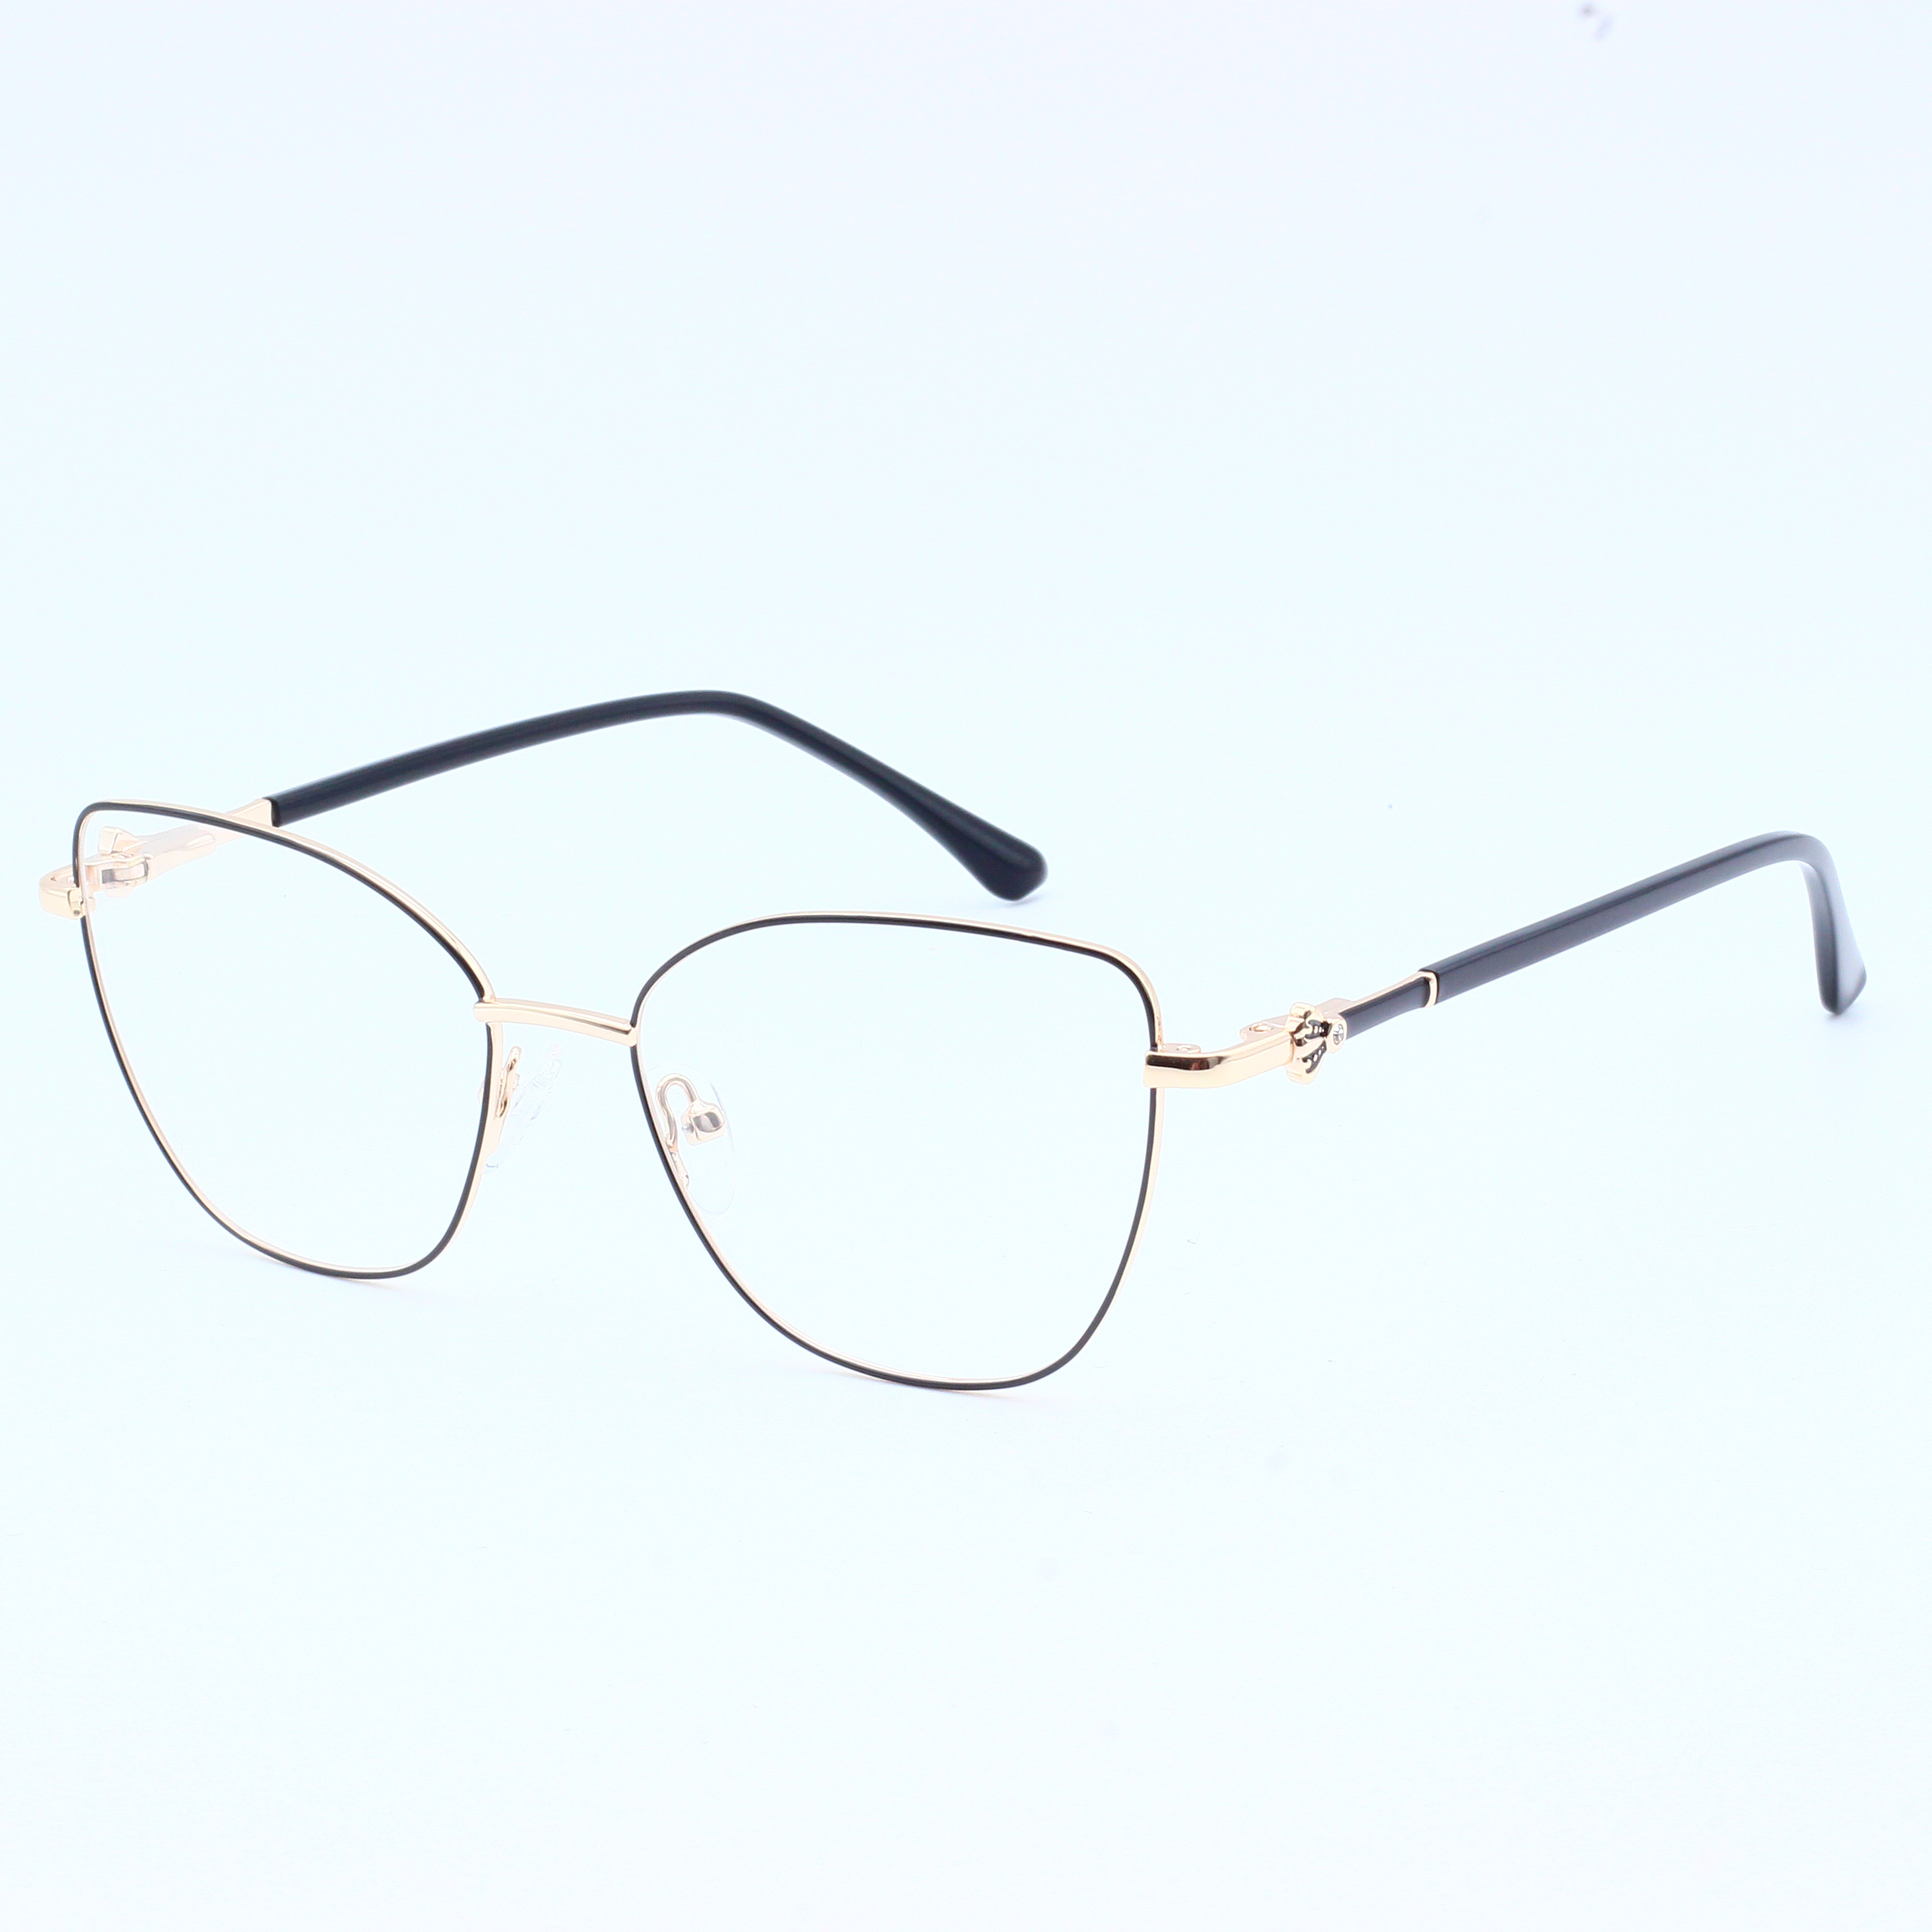 New Fashion Trend Metal Eyeglasses Frame (5)